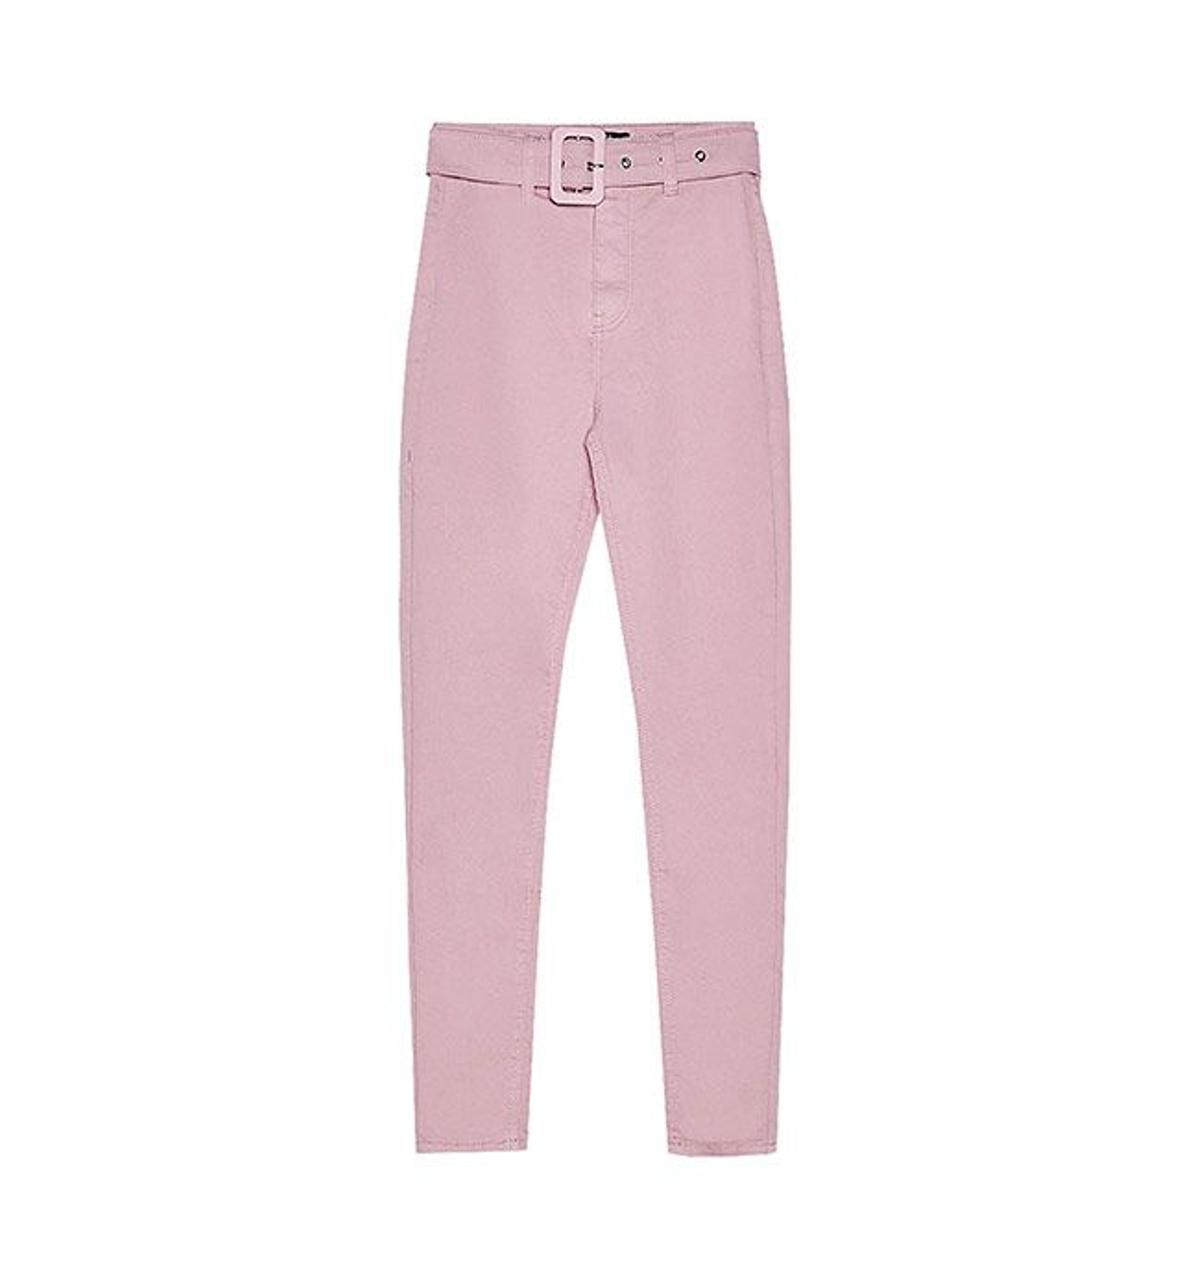 Pantalón rosa pastel de Bershka